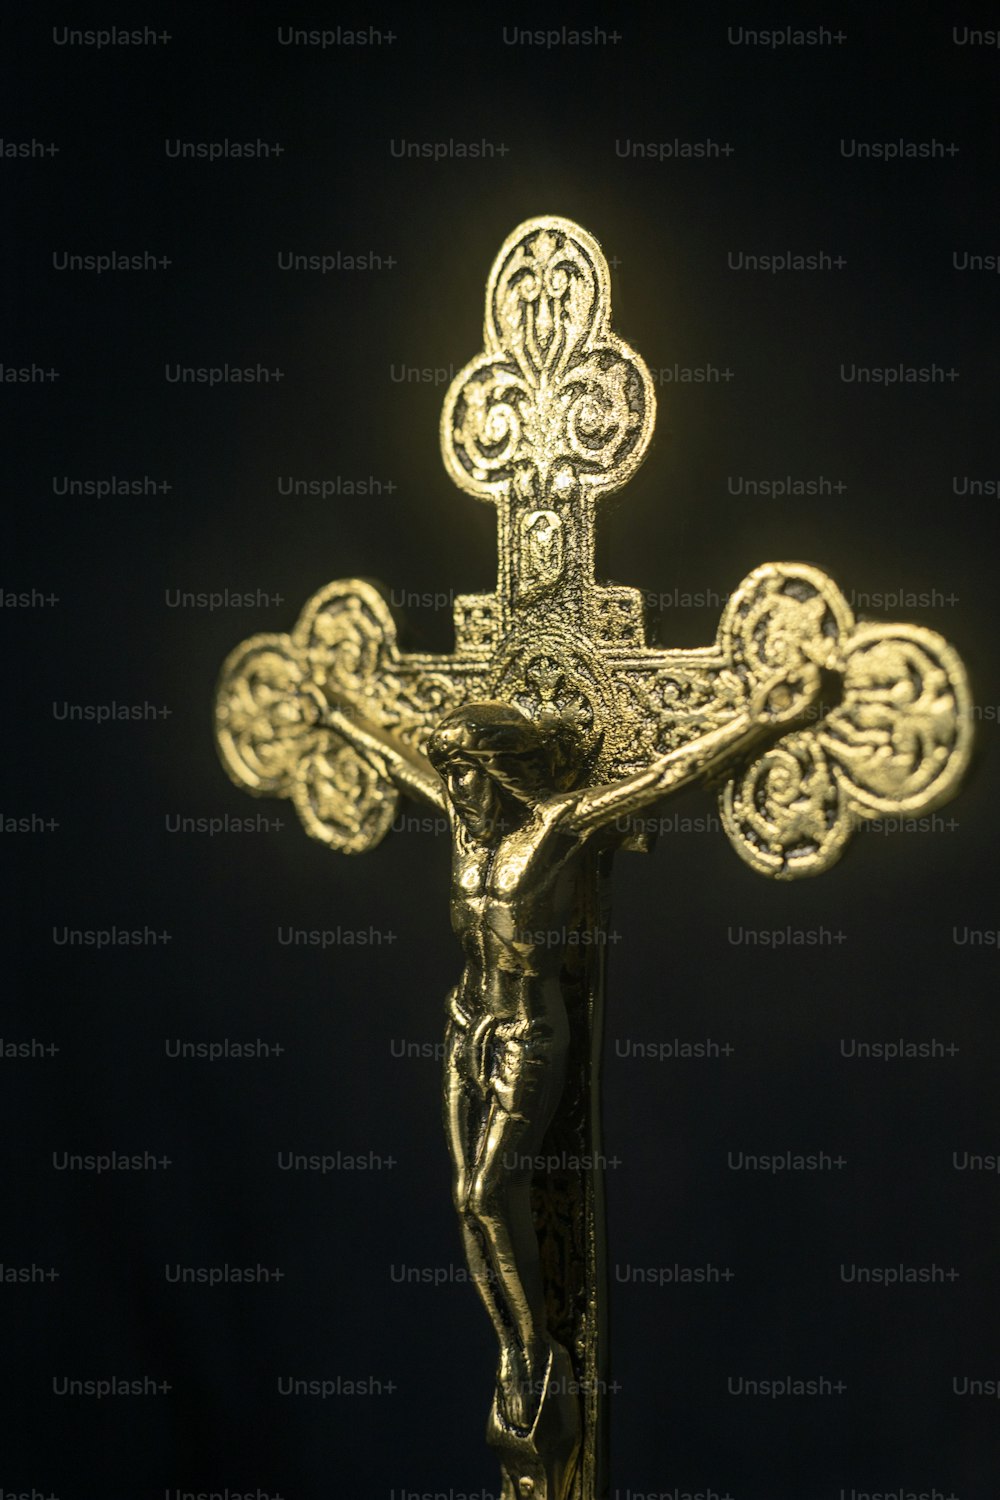 um crucifixo dourado em um fundo preto